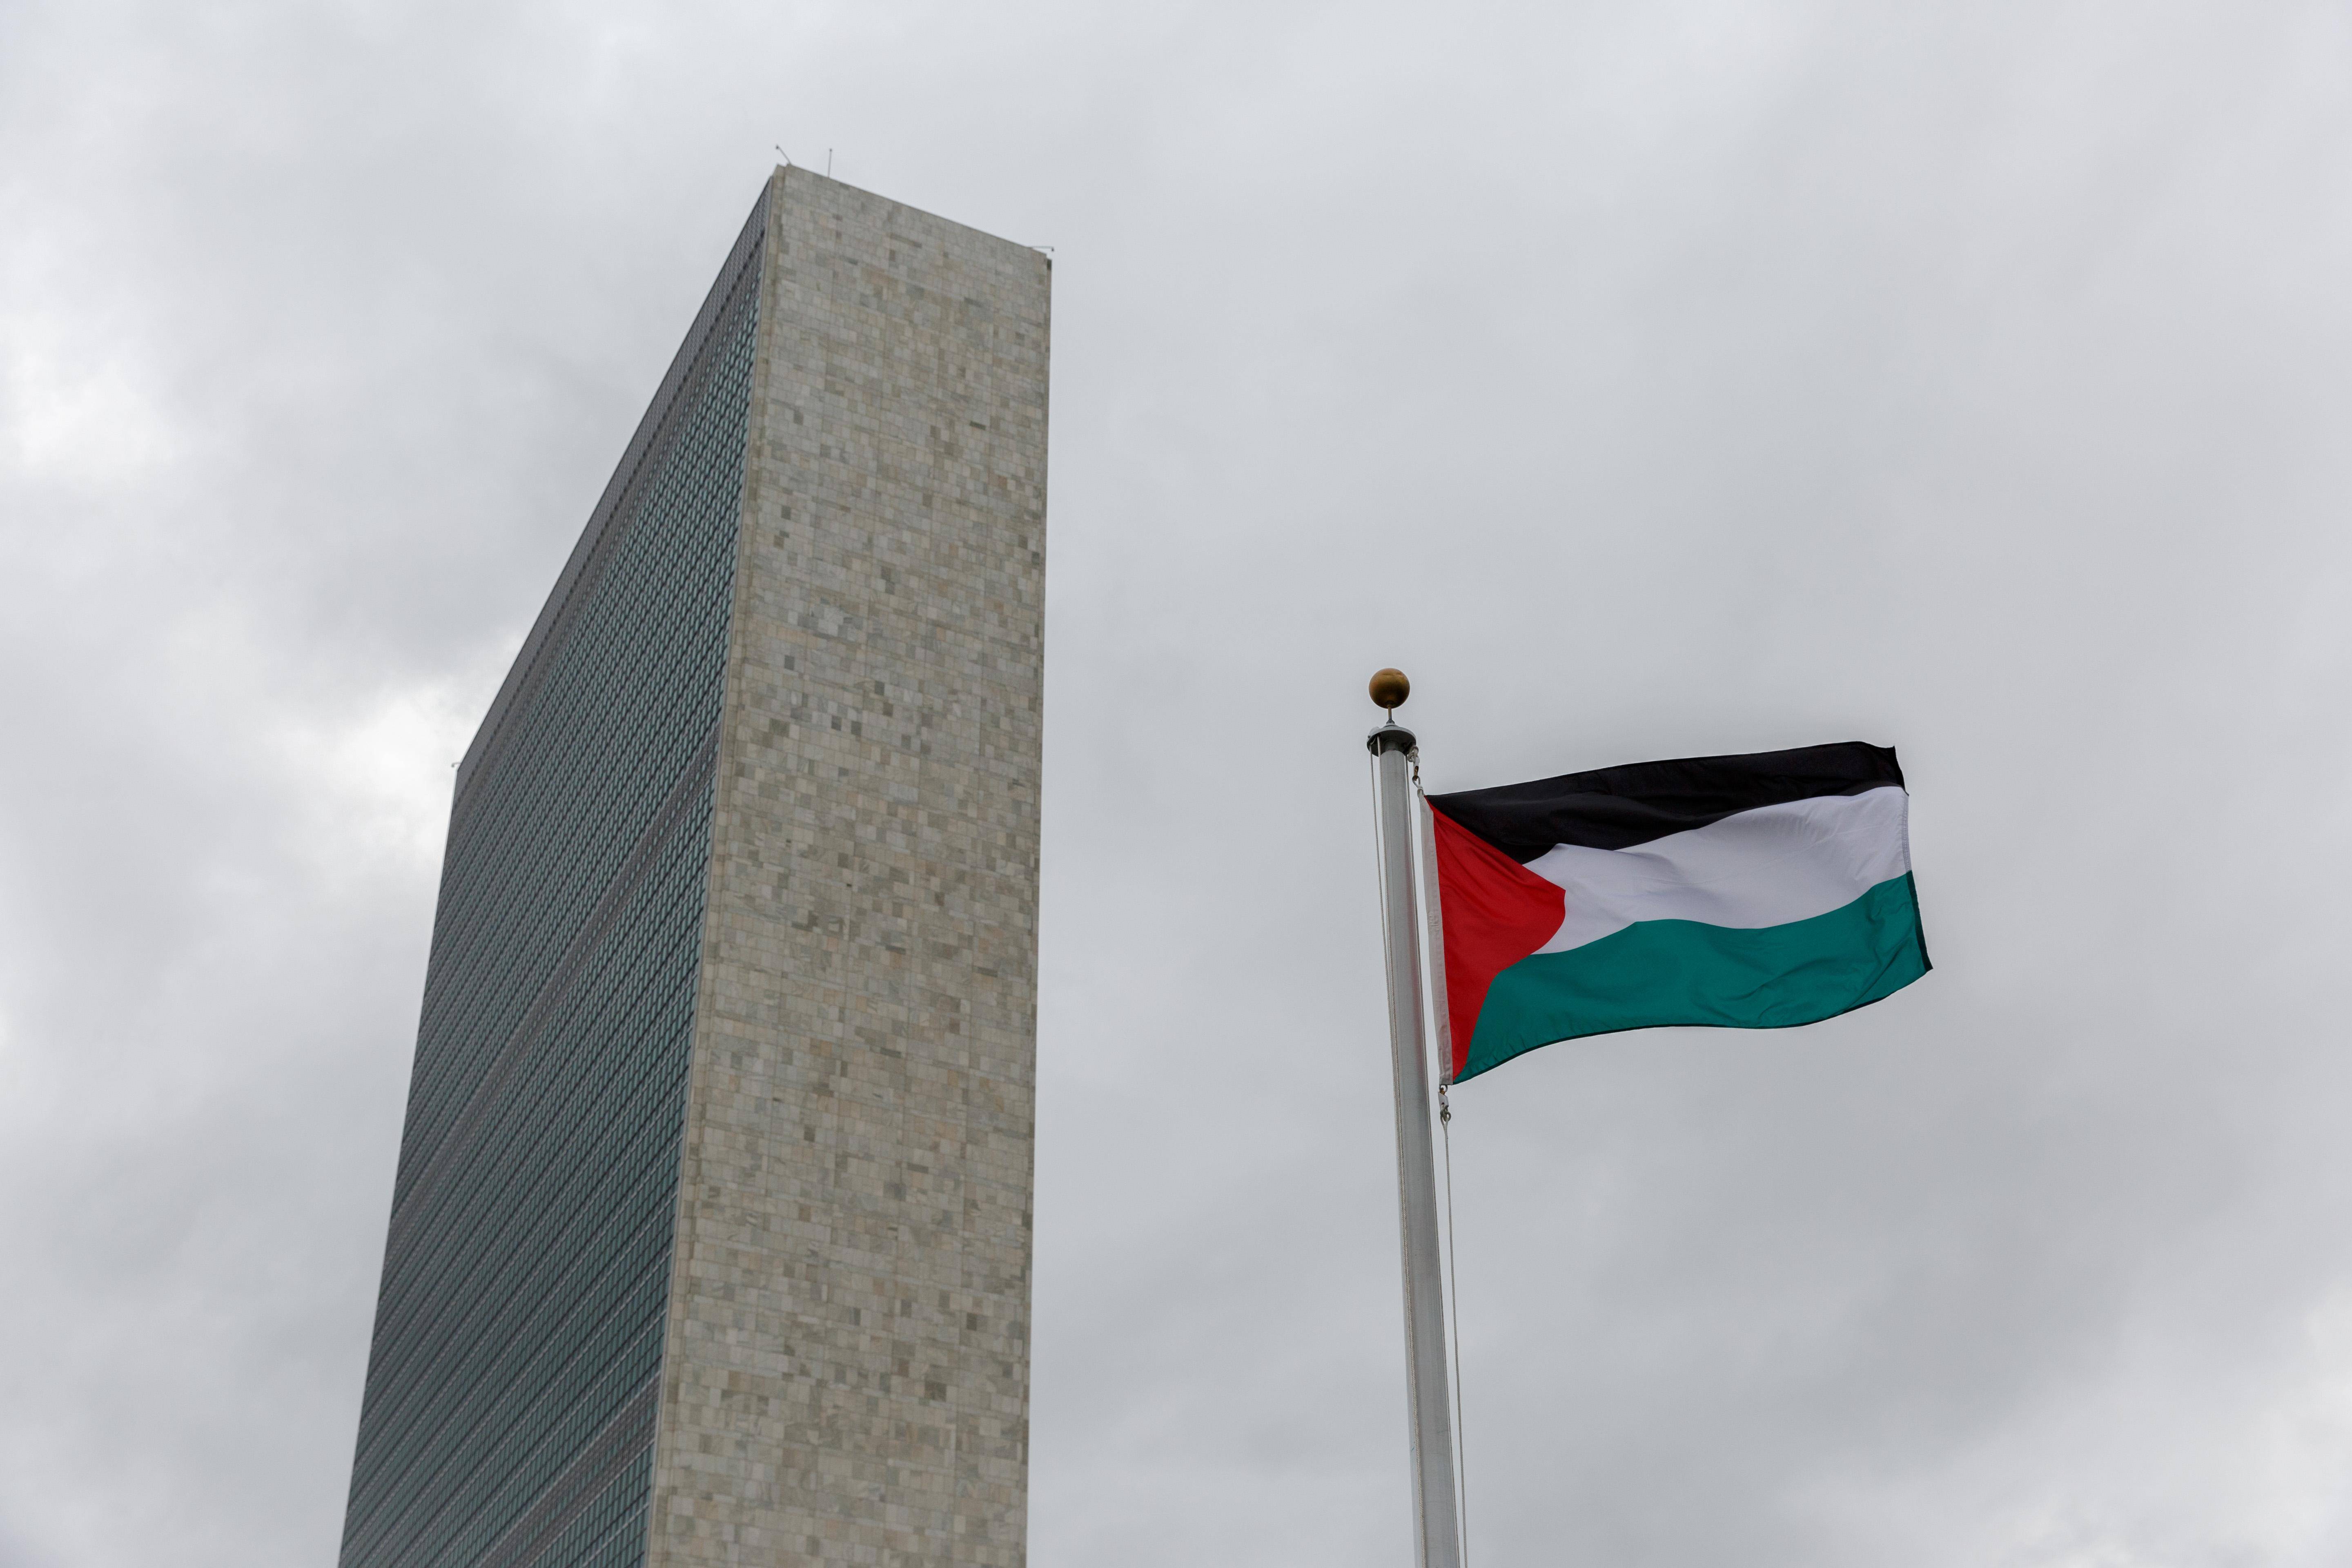 加沙国旗图片